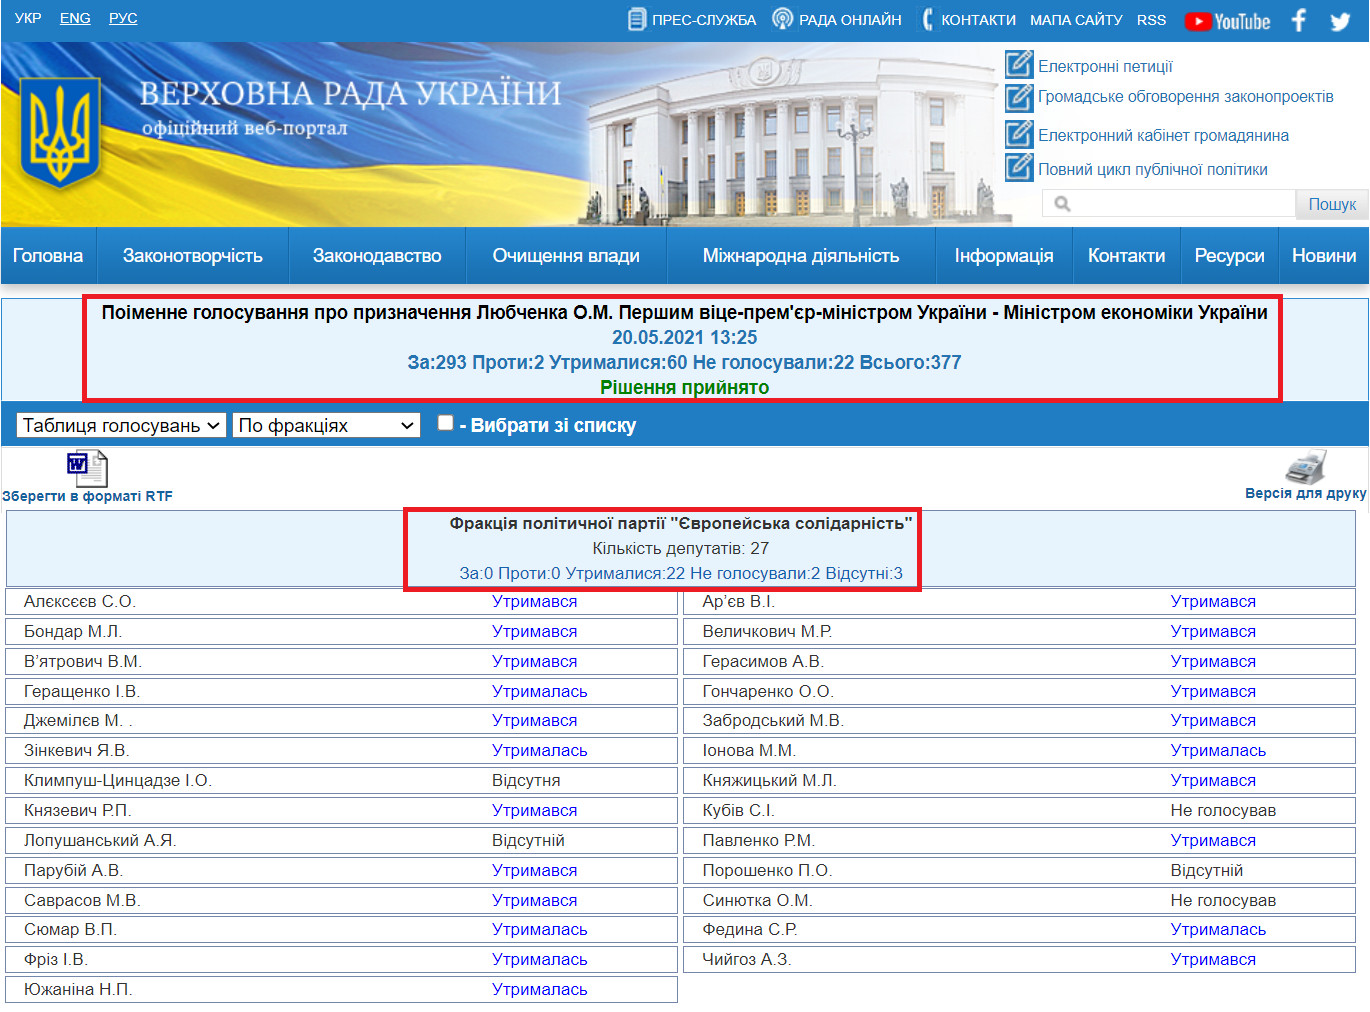 http://w1.c1.rada.gov.ua/pls/radan_gs09/ns_golos?g_id=12758